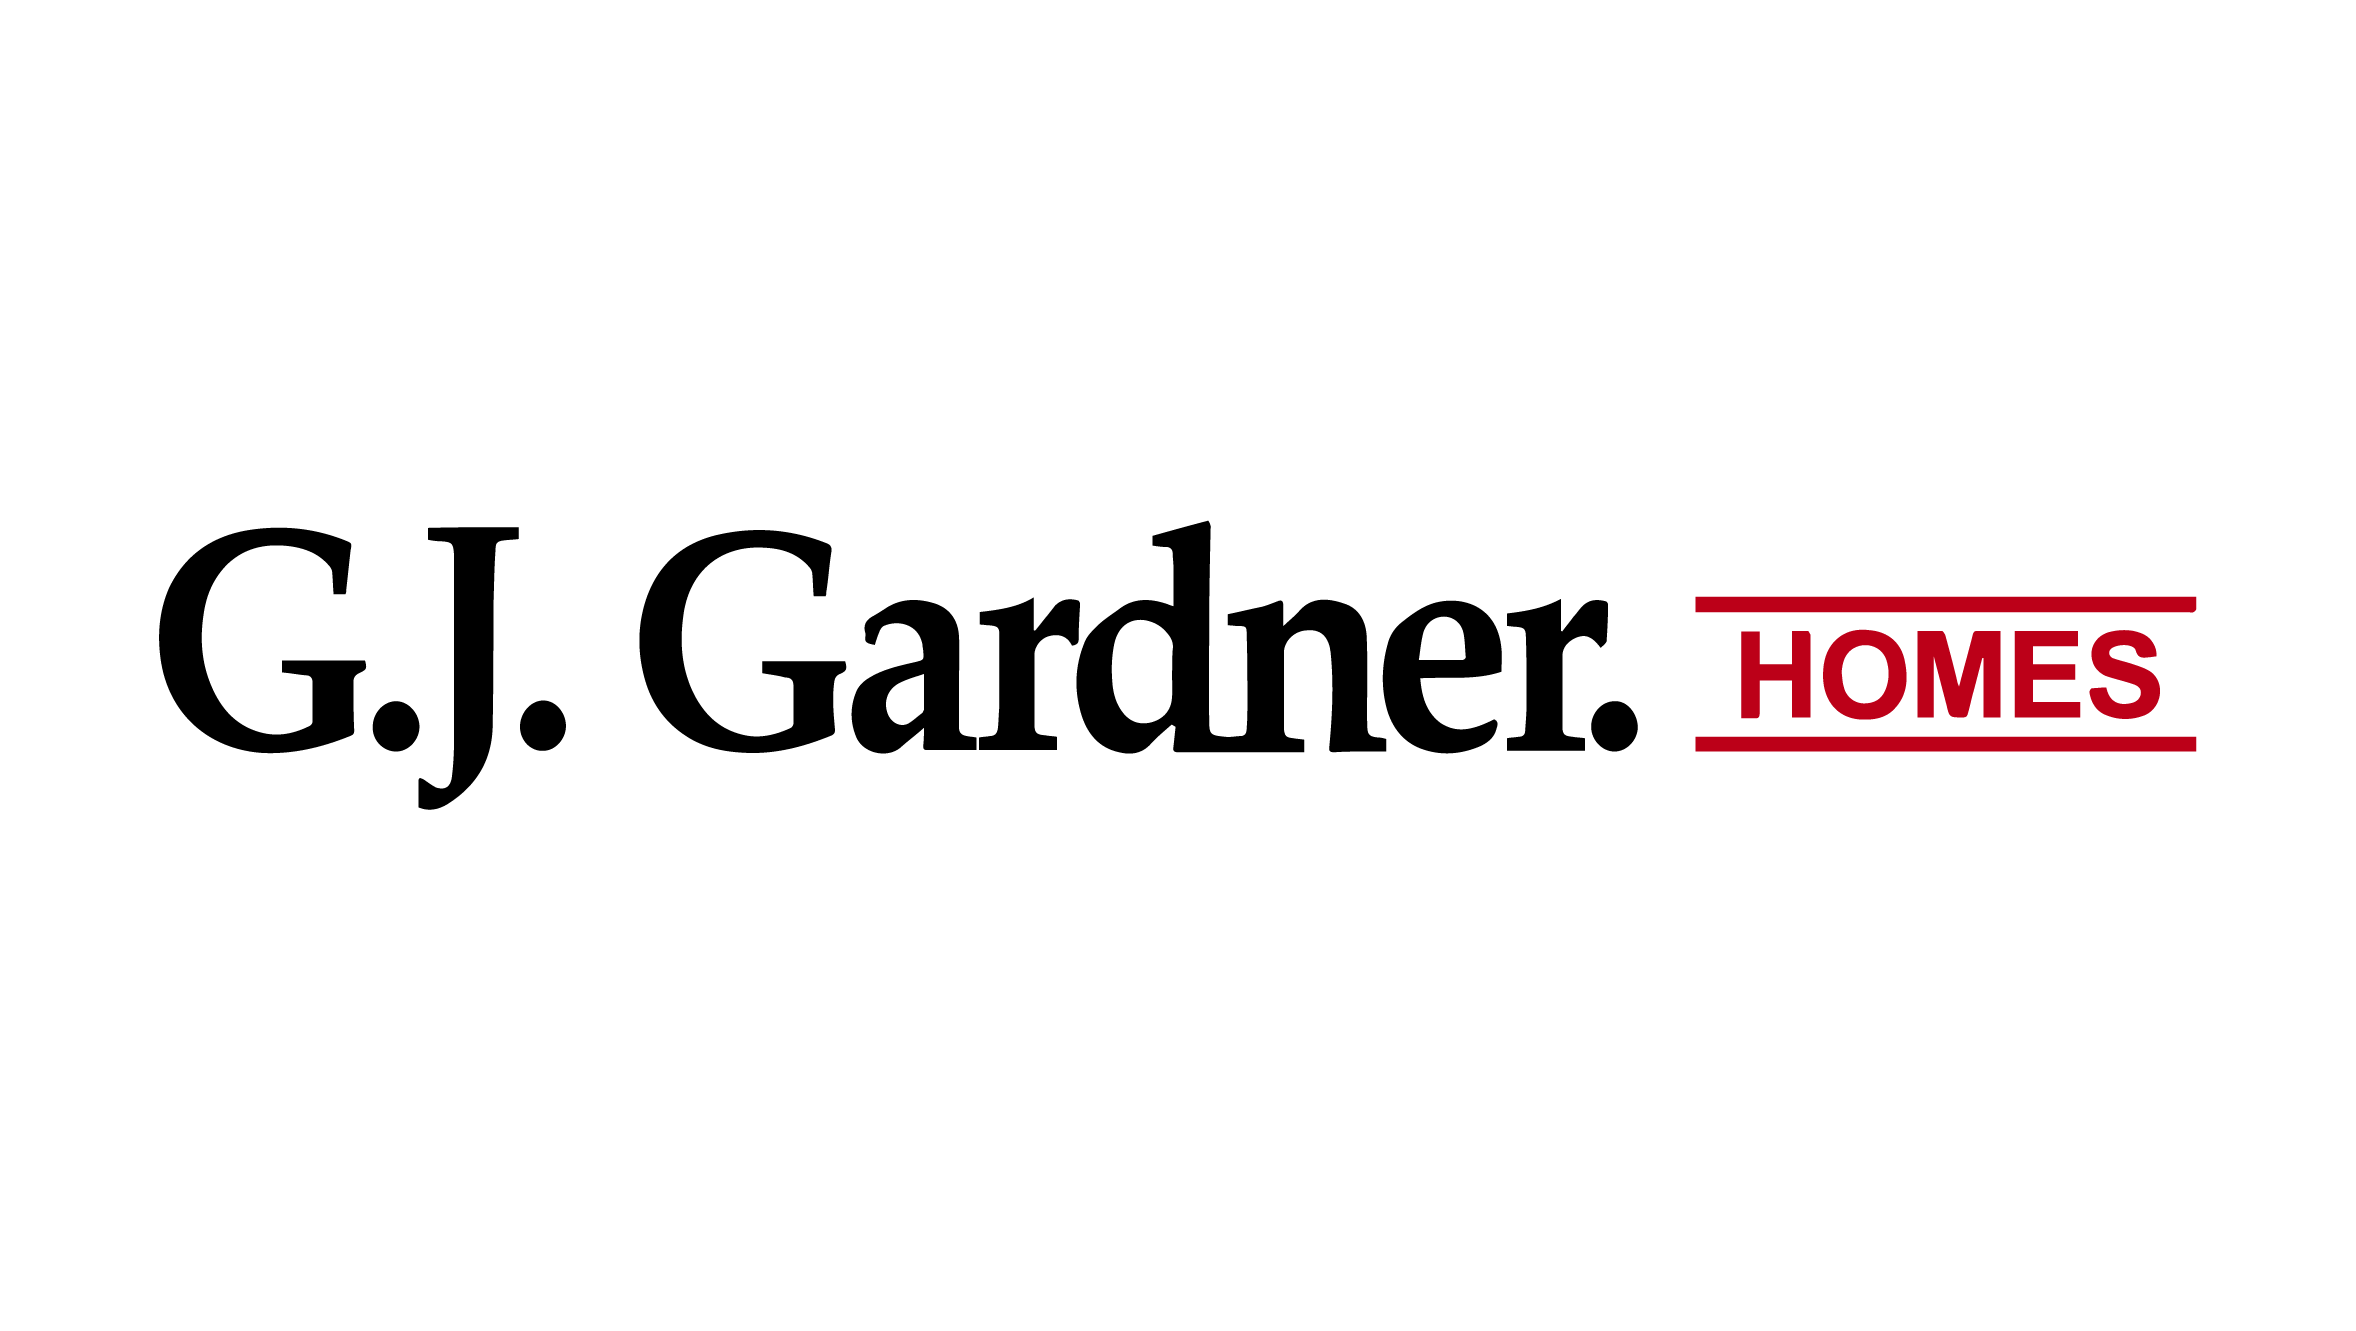 G.J. Gardner. Homes Ltd